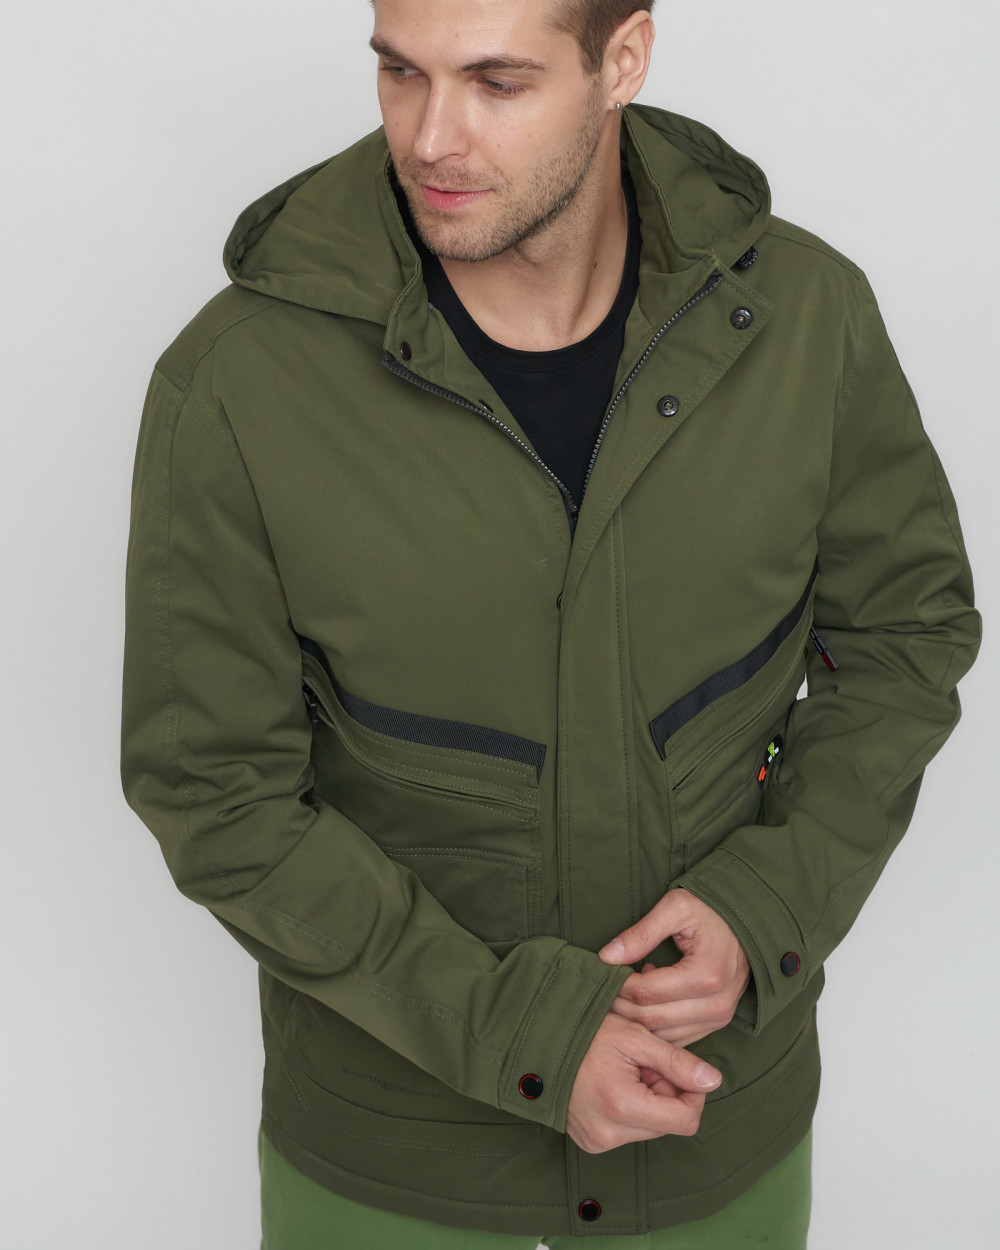 Купить куртку мужскую спортивную весеннюю оптом от производителя недорого в Москве 8596Kh 1